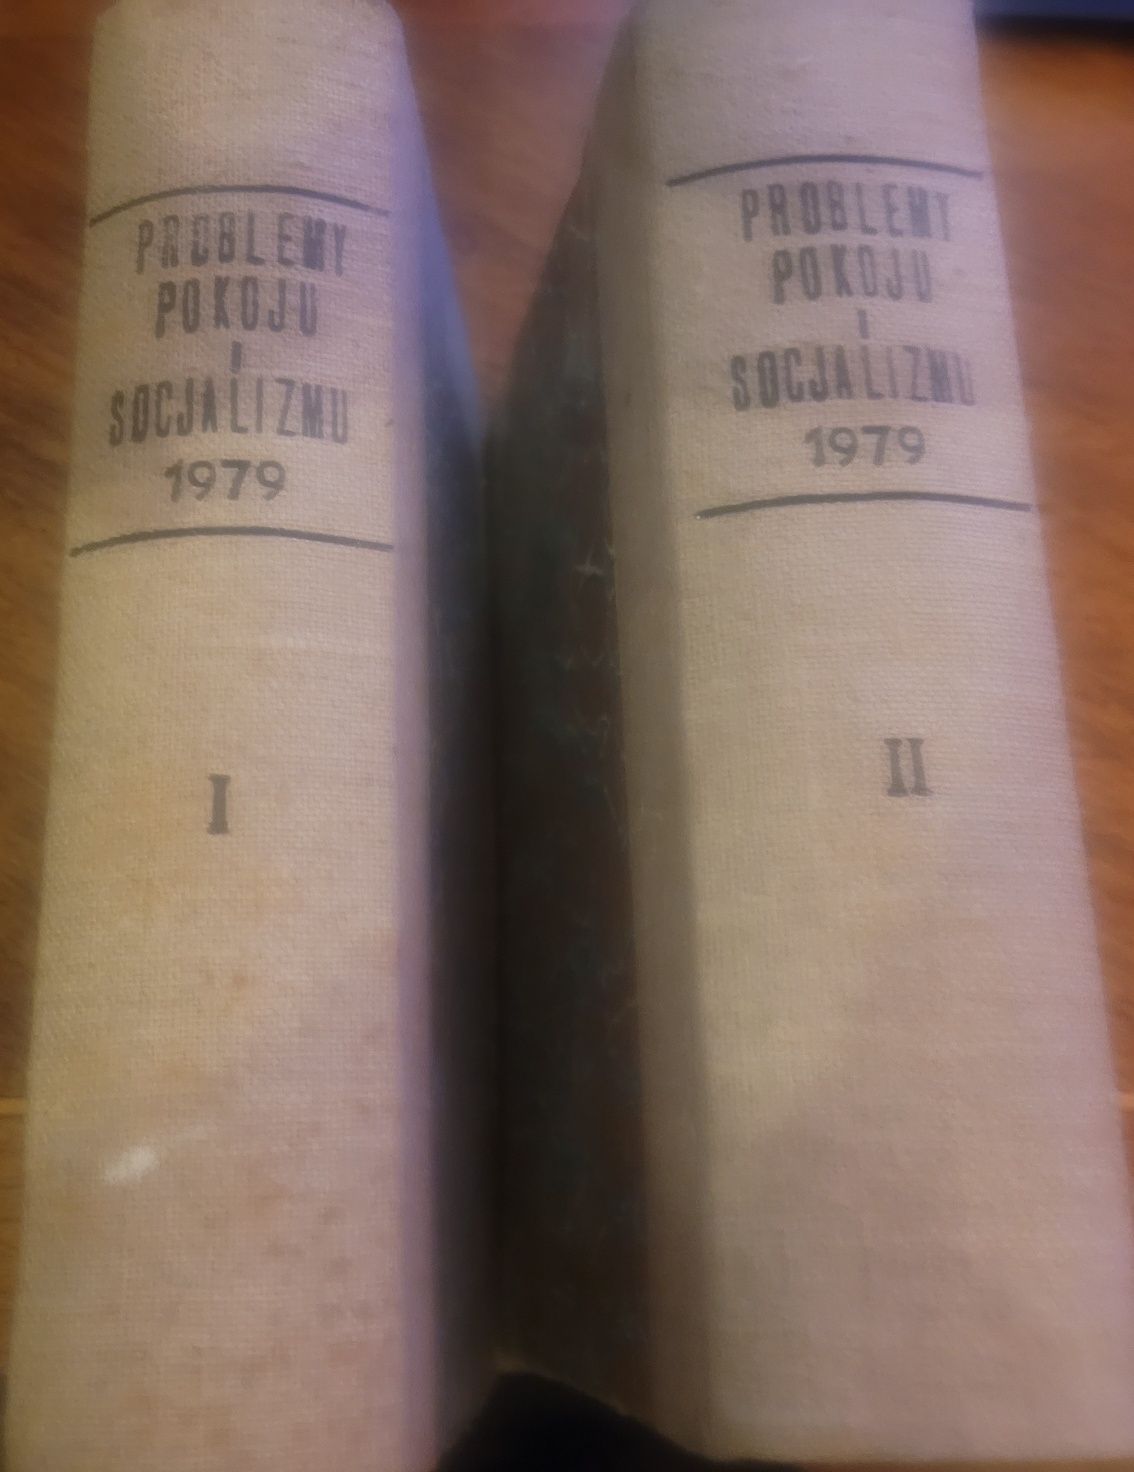 Problemy Pokoju i Socjalizmu / Rocznik 1979 w 2 oprawionych tomach